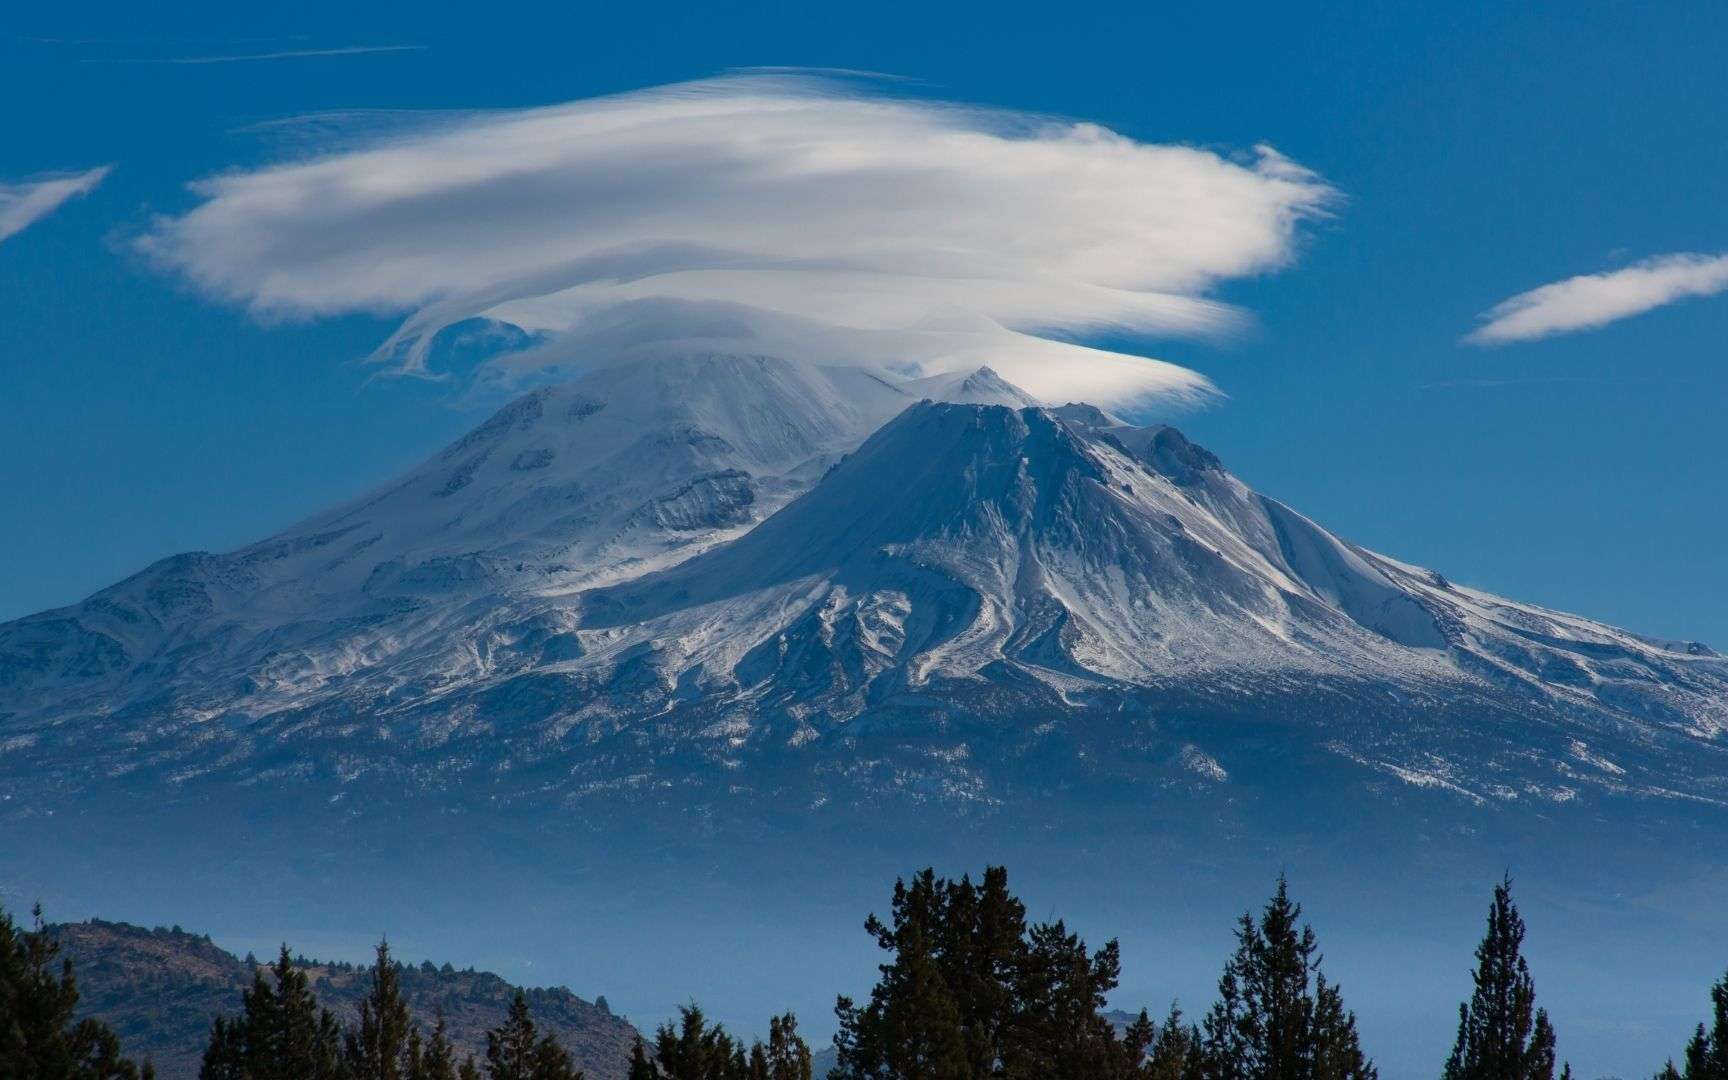 L'un des plus célèbres nuages accrochés à une montagne est celui du mont Fuji au Japon. © Canva